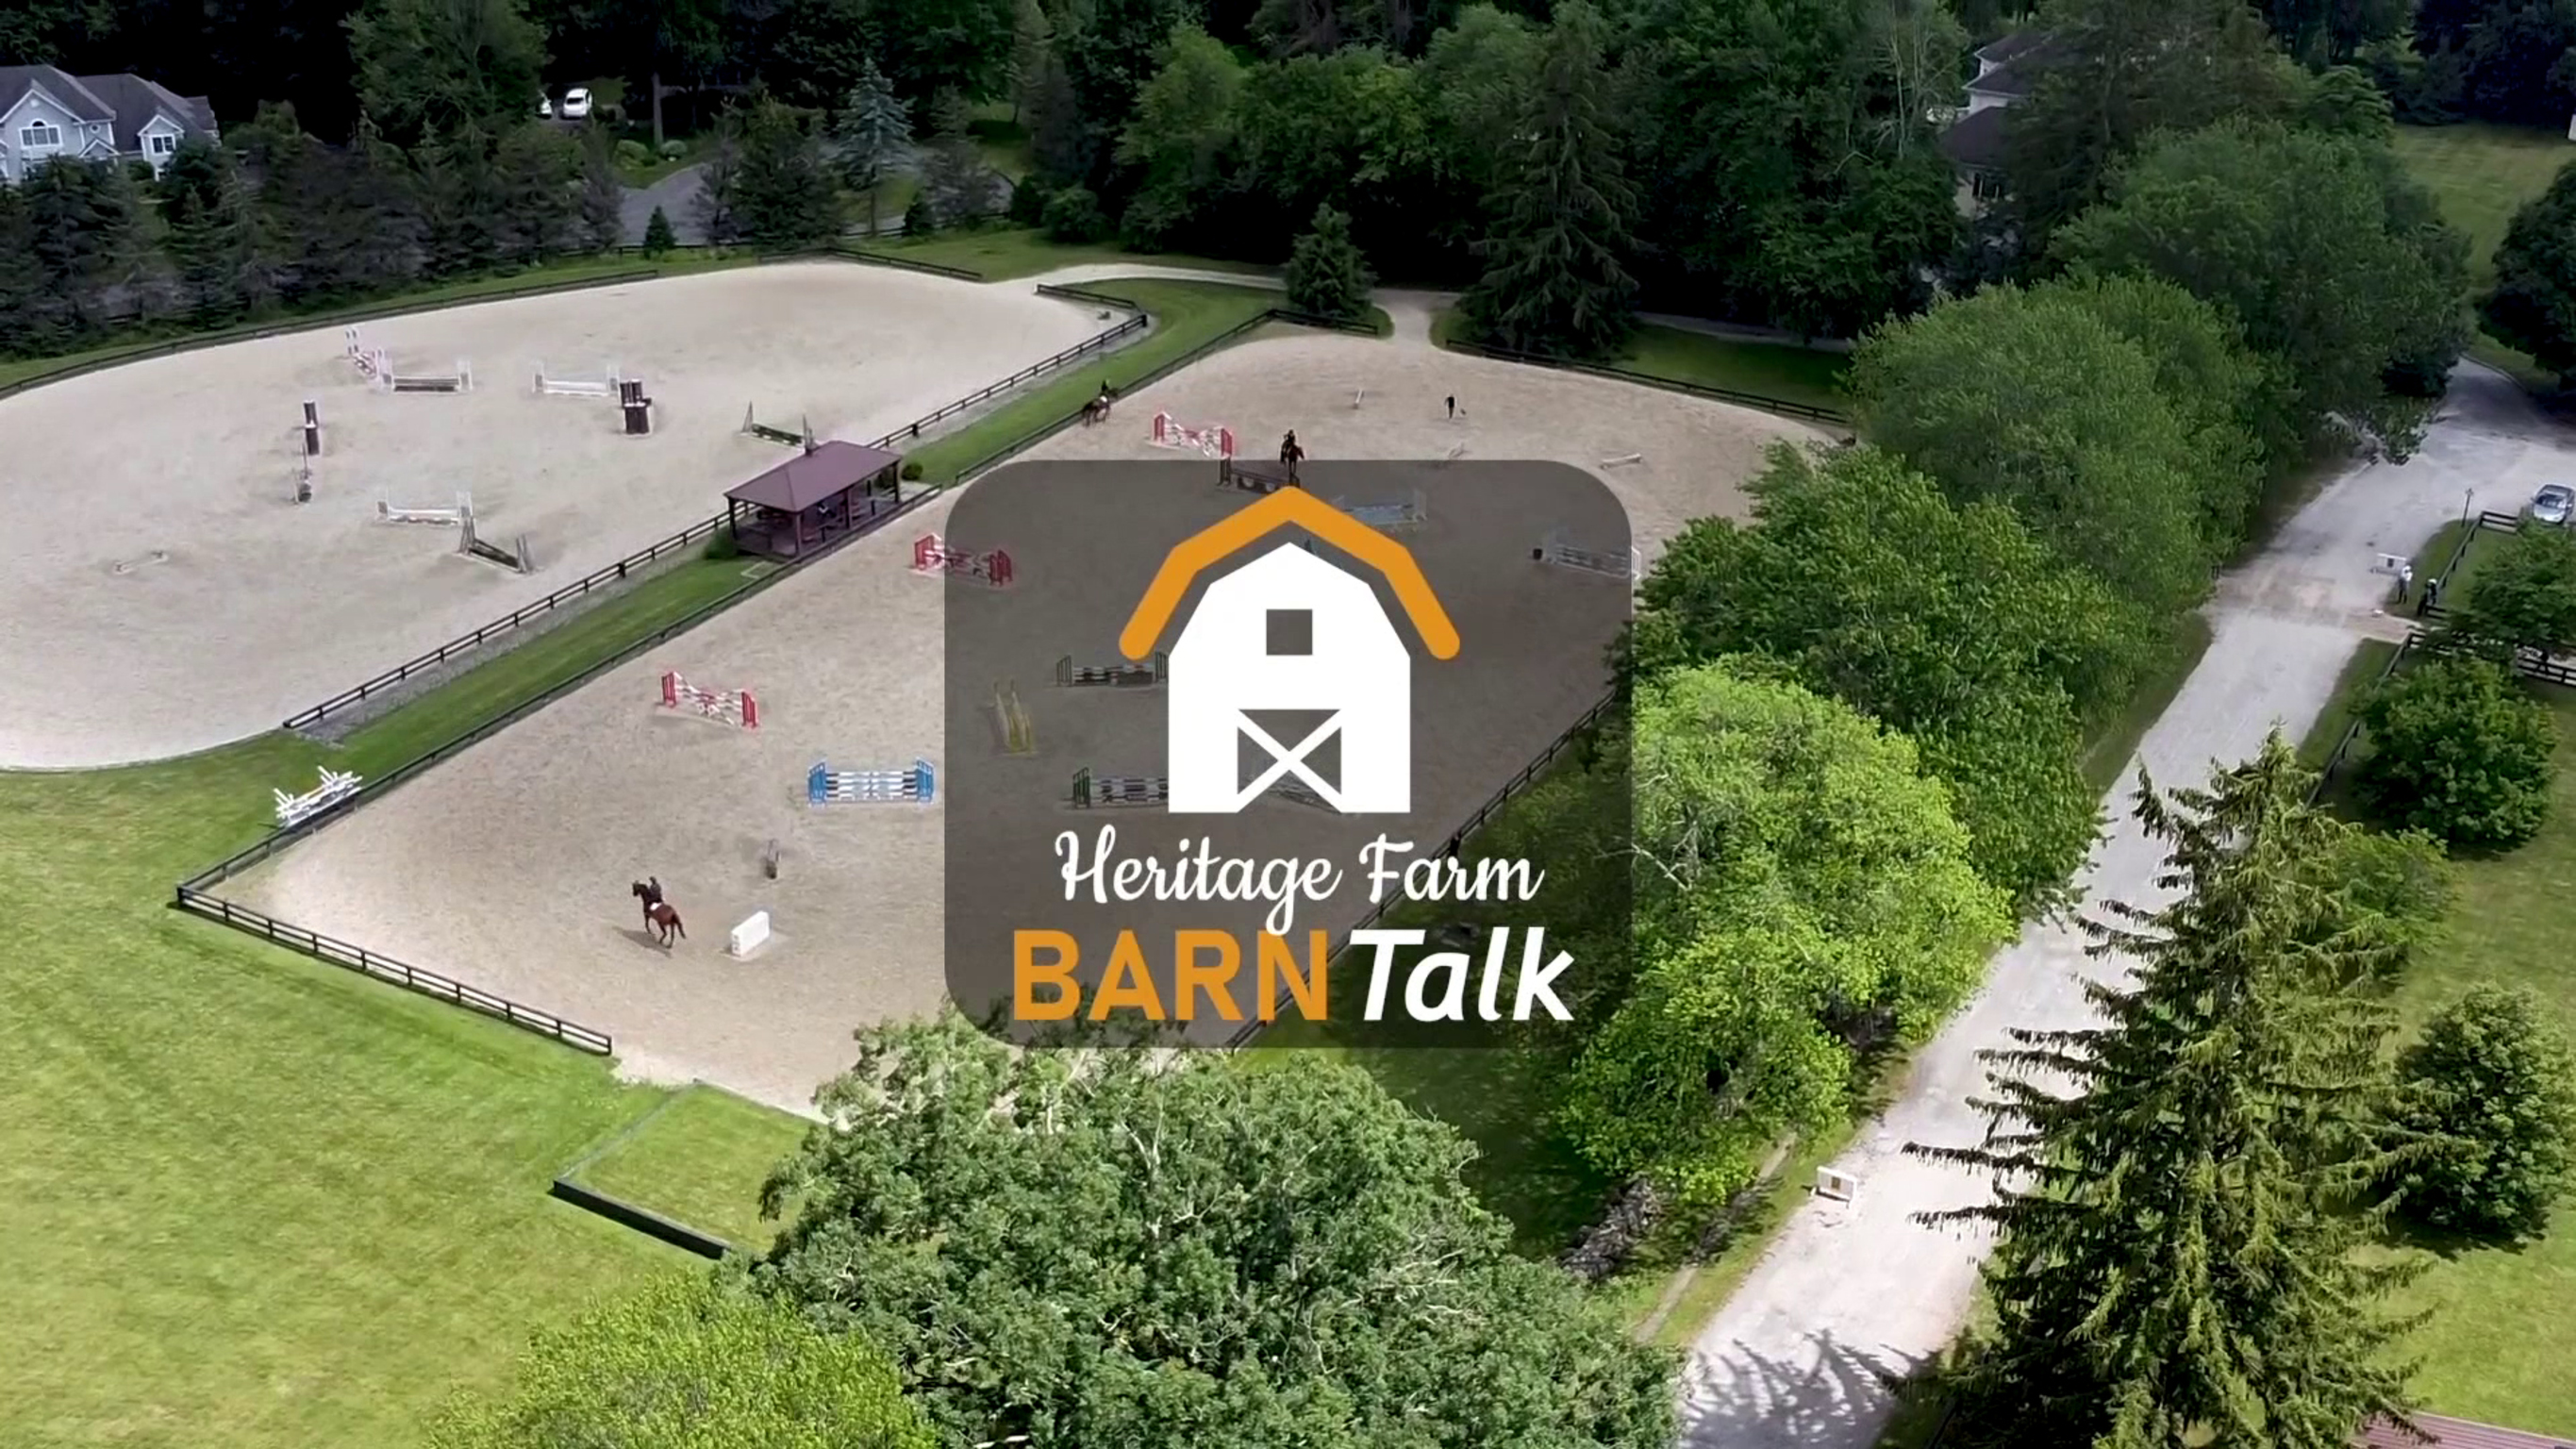 Heritage Farm Barn Talk